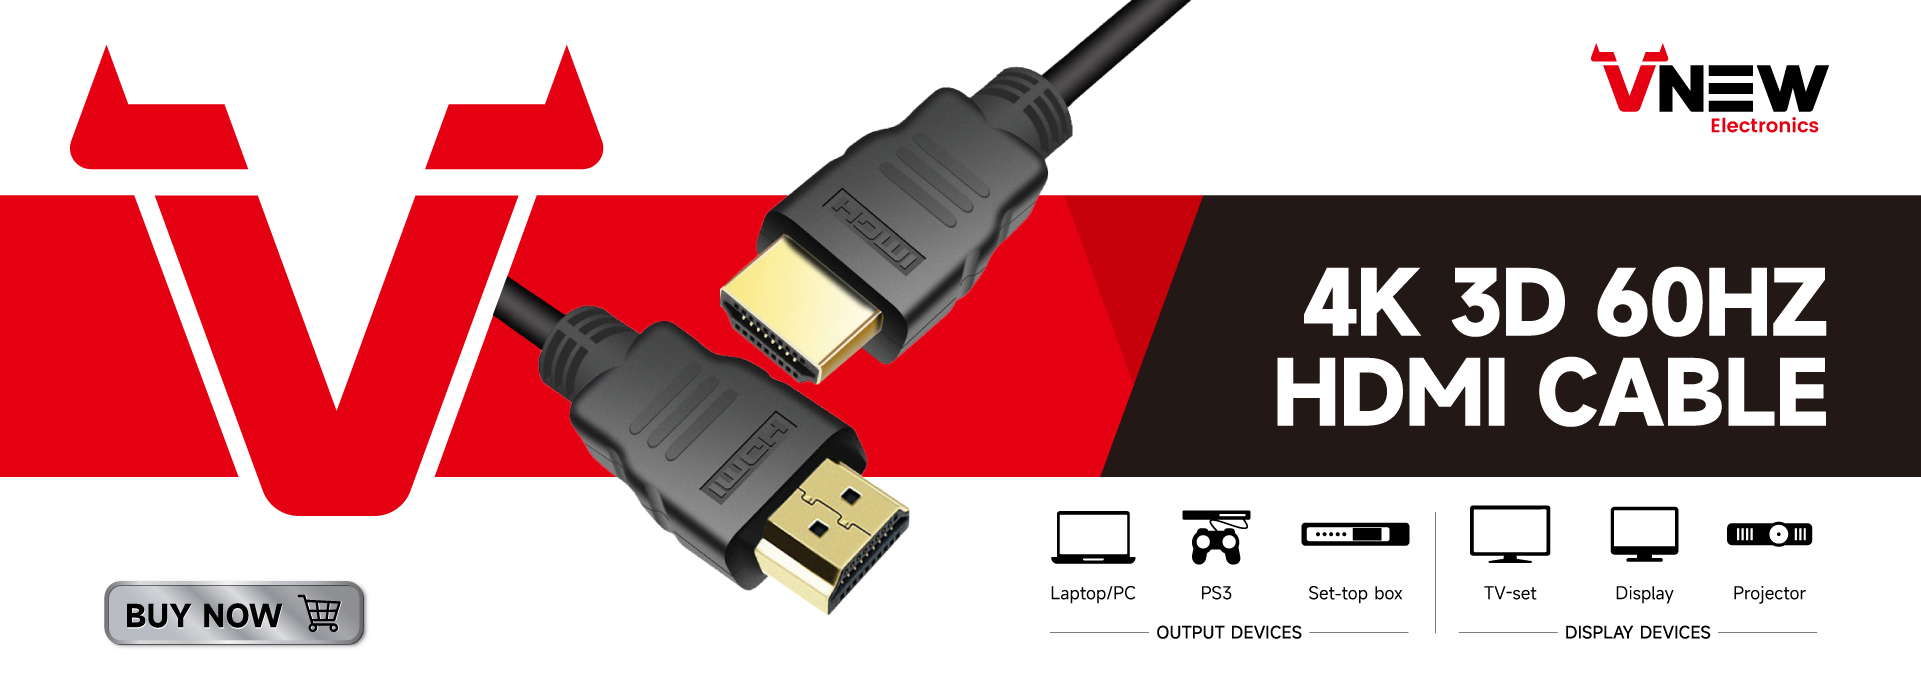 VN-HDP01 Vuusi mukautettu pituus näyttöportti HDMI-kaapeliin 4K 60Hz DP